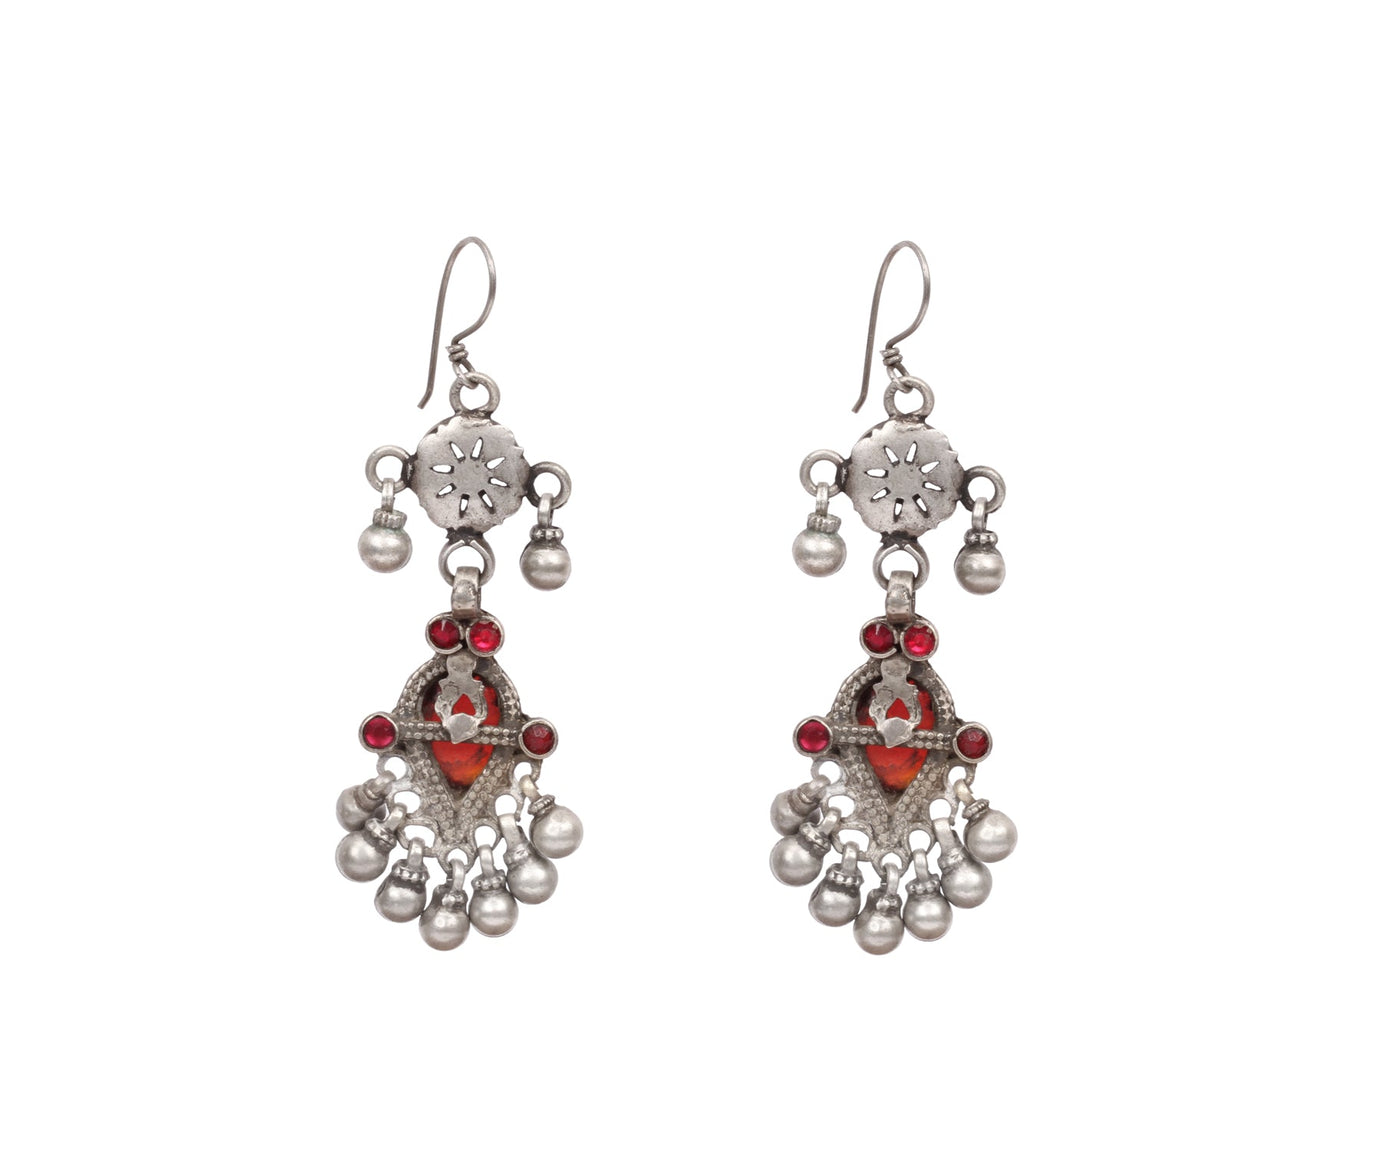 Silver Handcrafted Red Tribal Silver Earrings-Earrings-Sangeeta Boochra